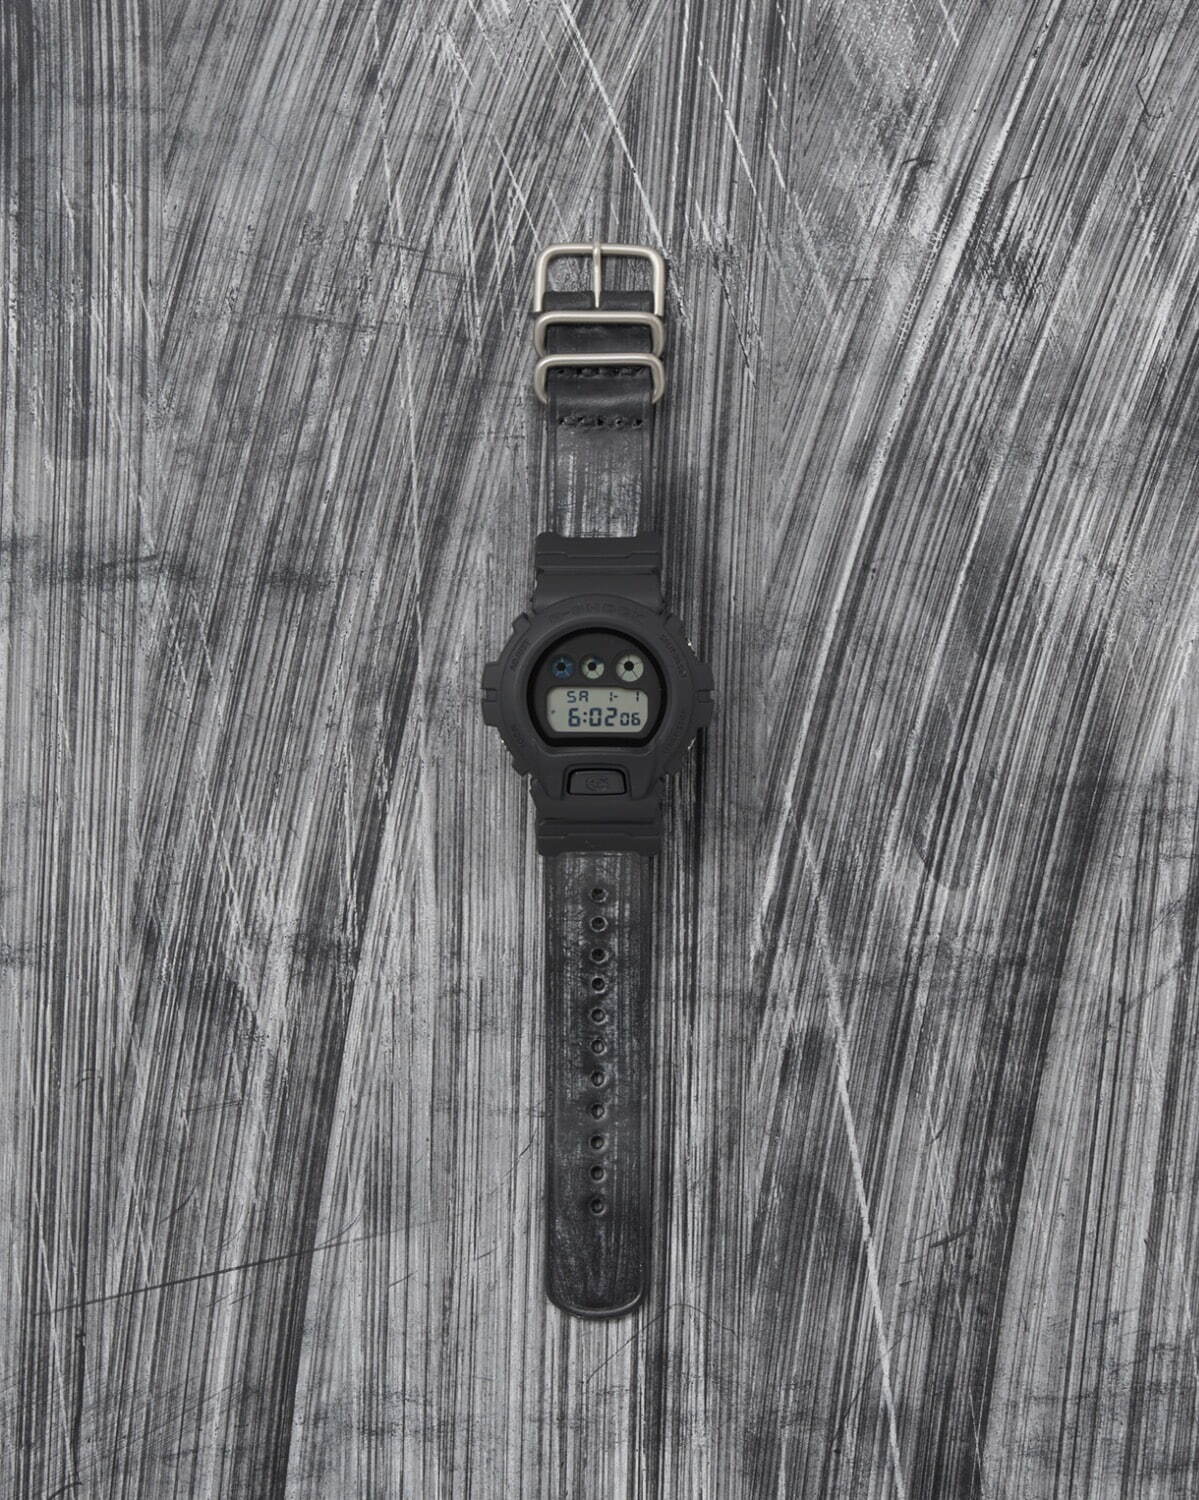 エンダースキーマ×G-SHOCKの腕時計第3弾、ブライドルレザーを用いた